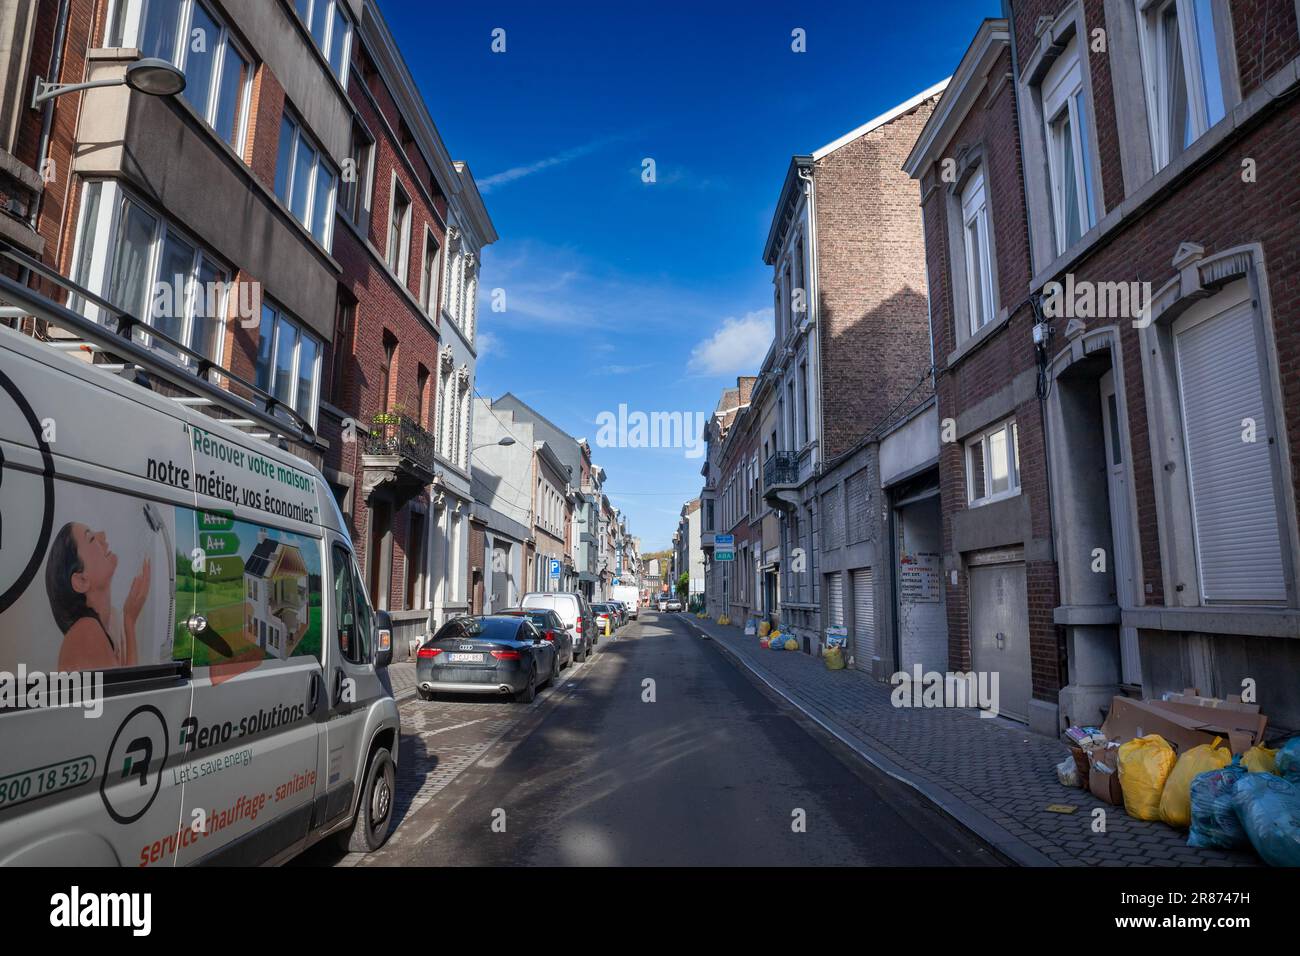 Immagine di una strada tipica del centro della città di Liegi, Belgio, rue de Serbie, con la spazzatura traboccante. Liegi è una delle principali città e municipalità di W. Foto Stock